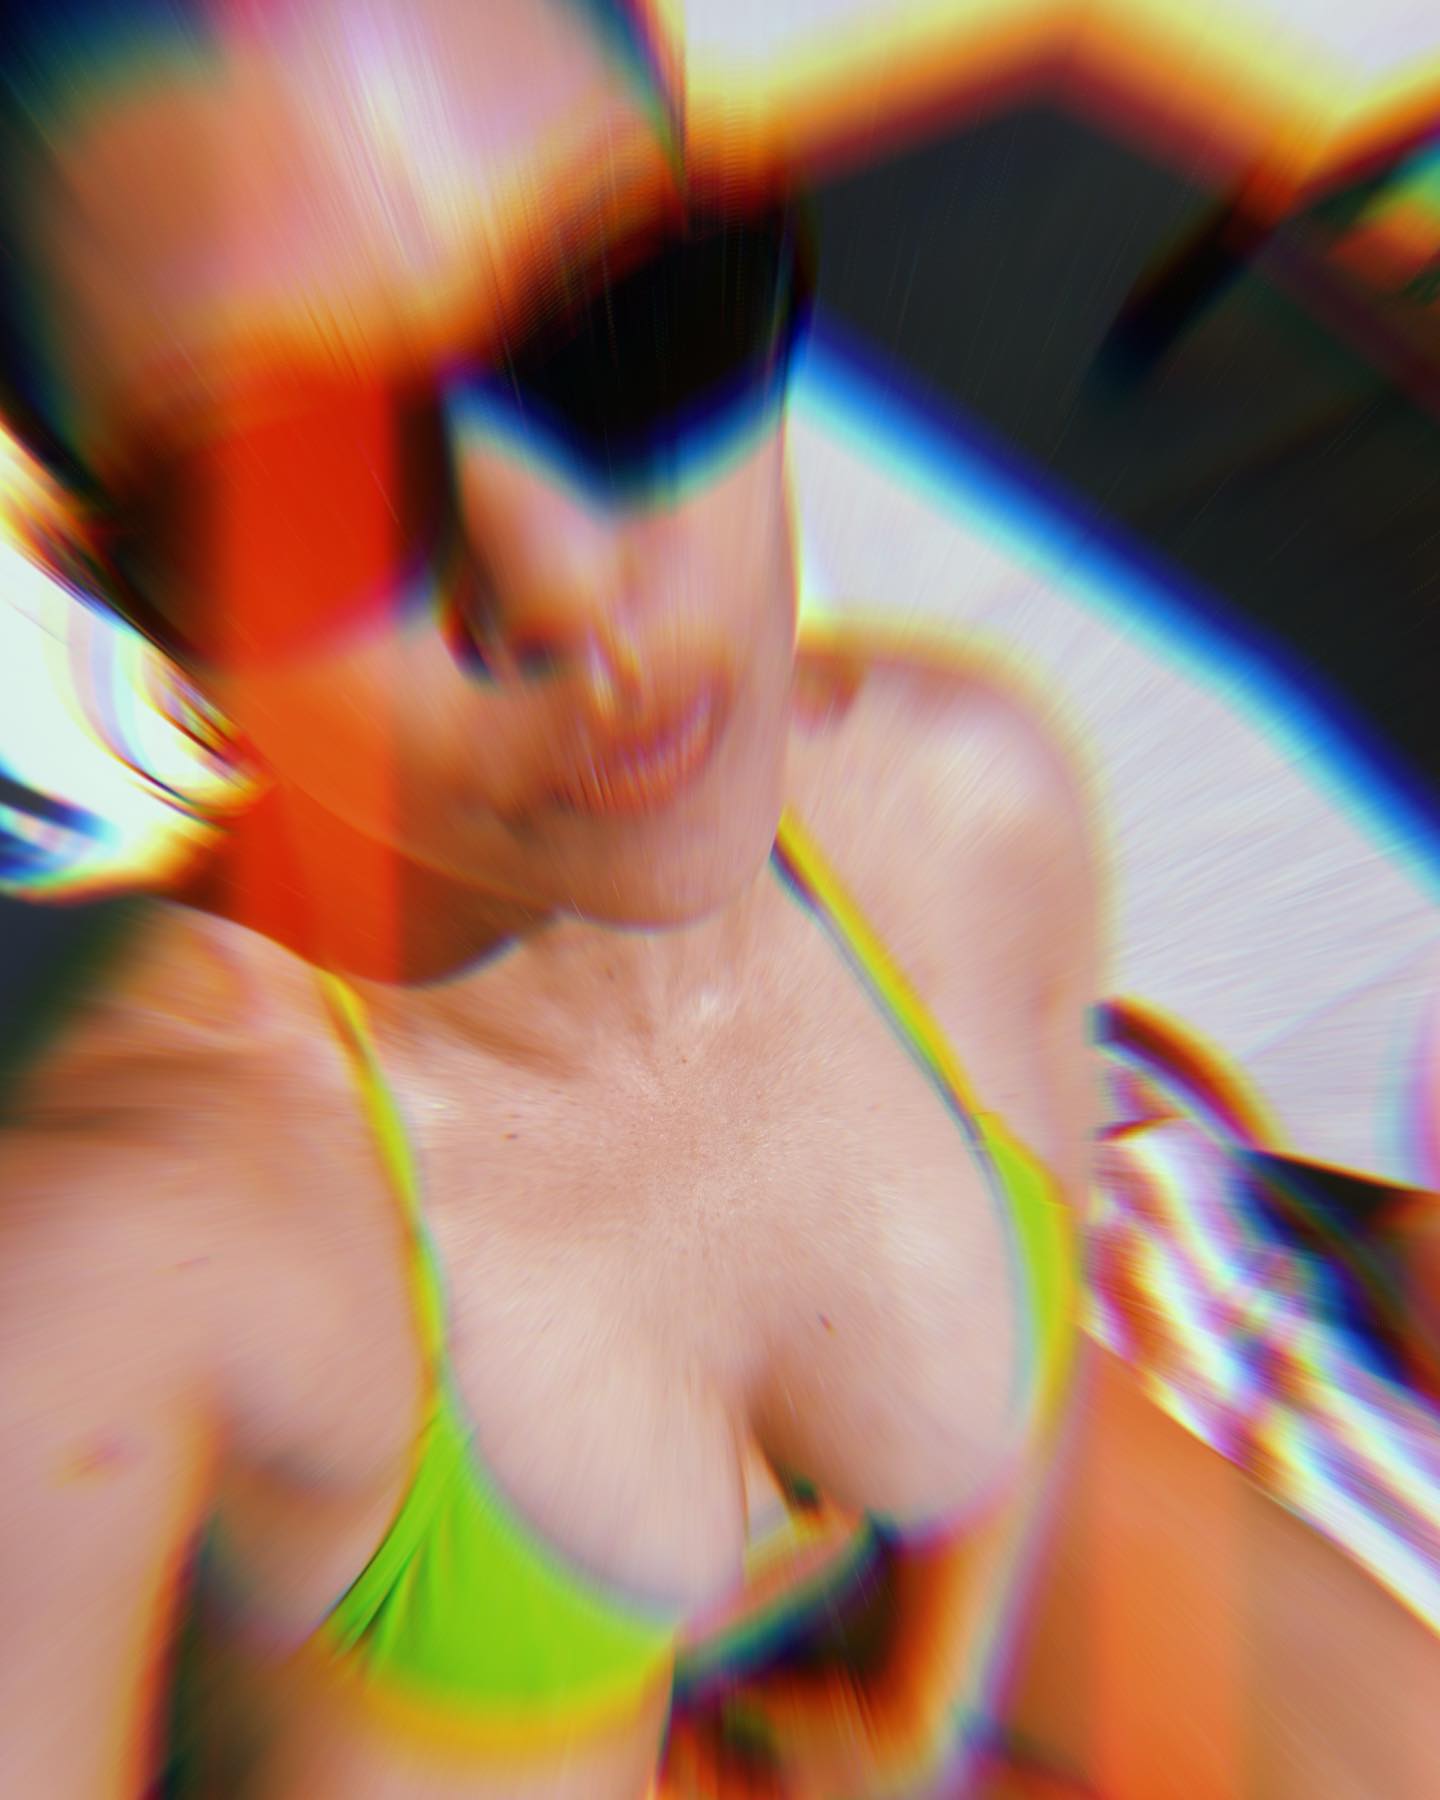 Kourtney Kardashian’s Pool Day! - Photo 1